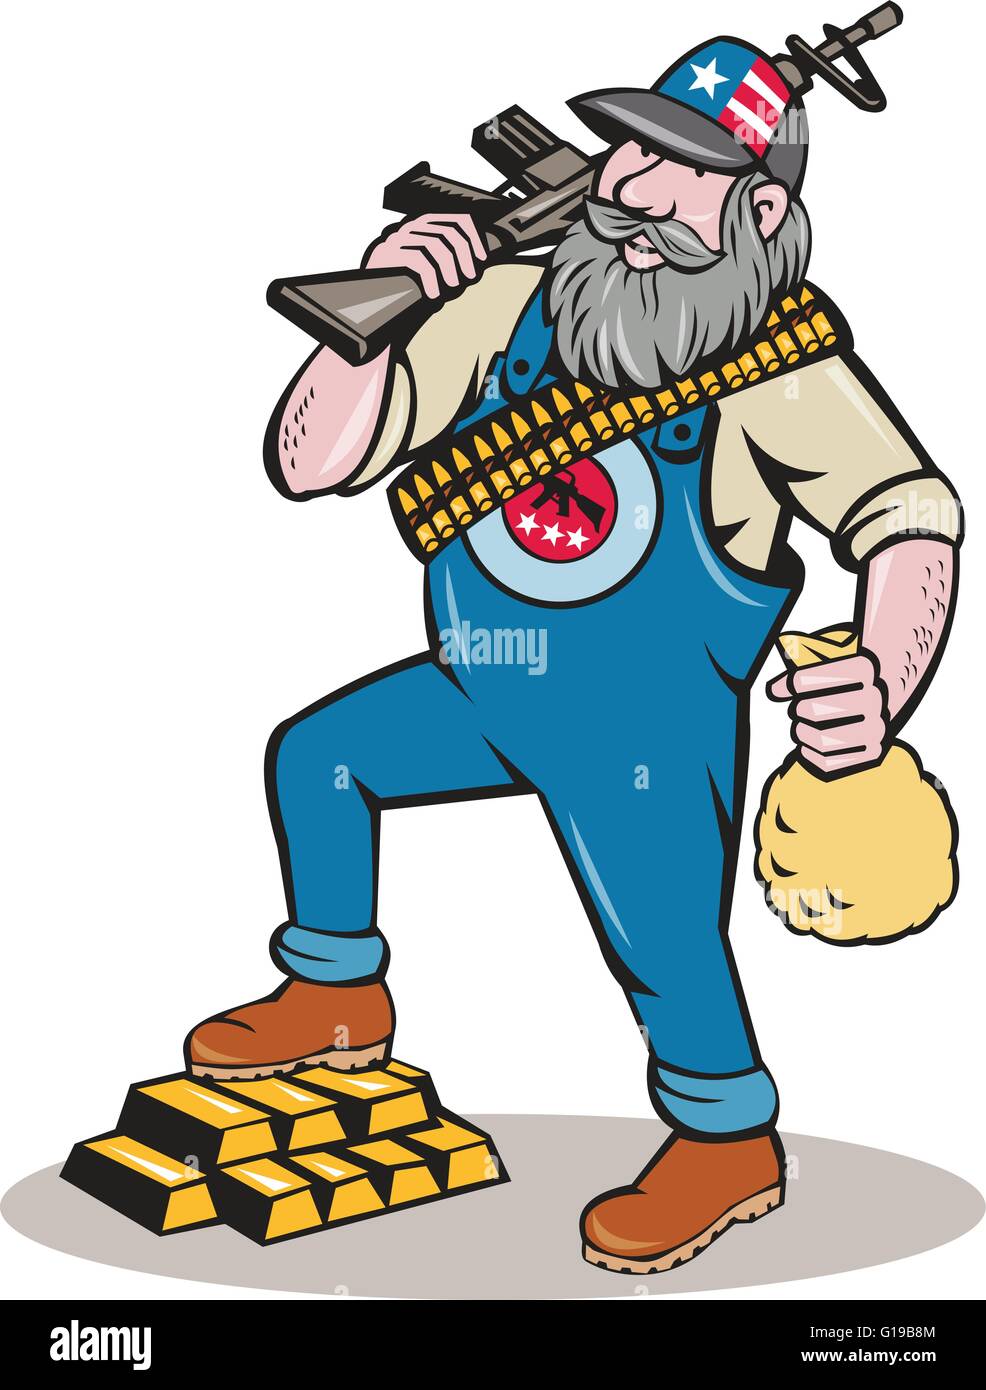 Abbildung eines Hinterwäldler Mannes mit Bart tragen Hut mit Sternen und Streifen und Munition über den Körper halten Gewehr getragen Stock Vektor